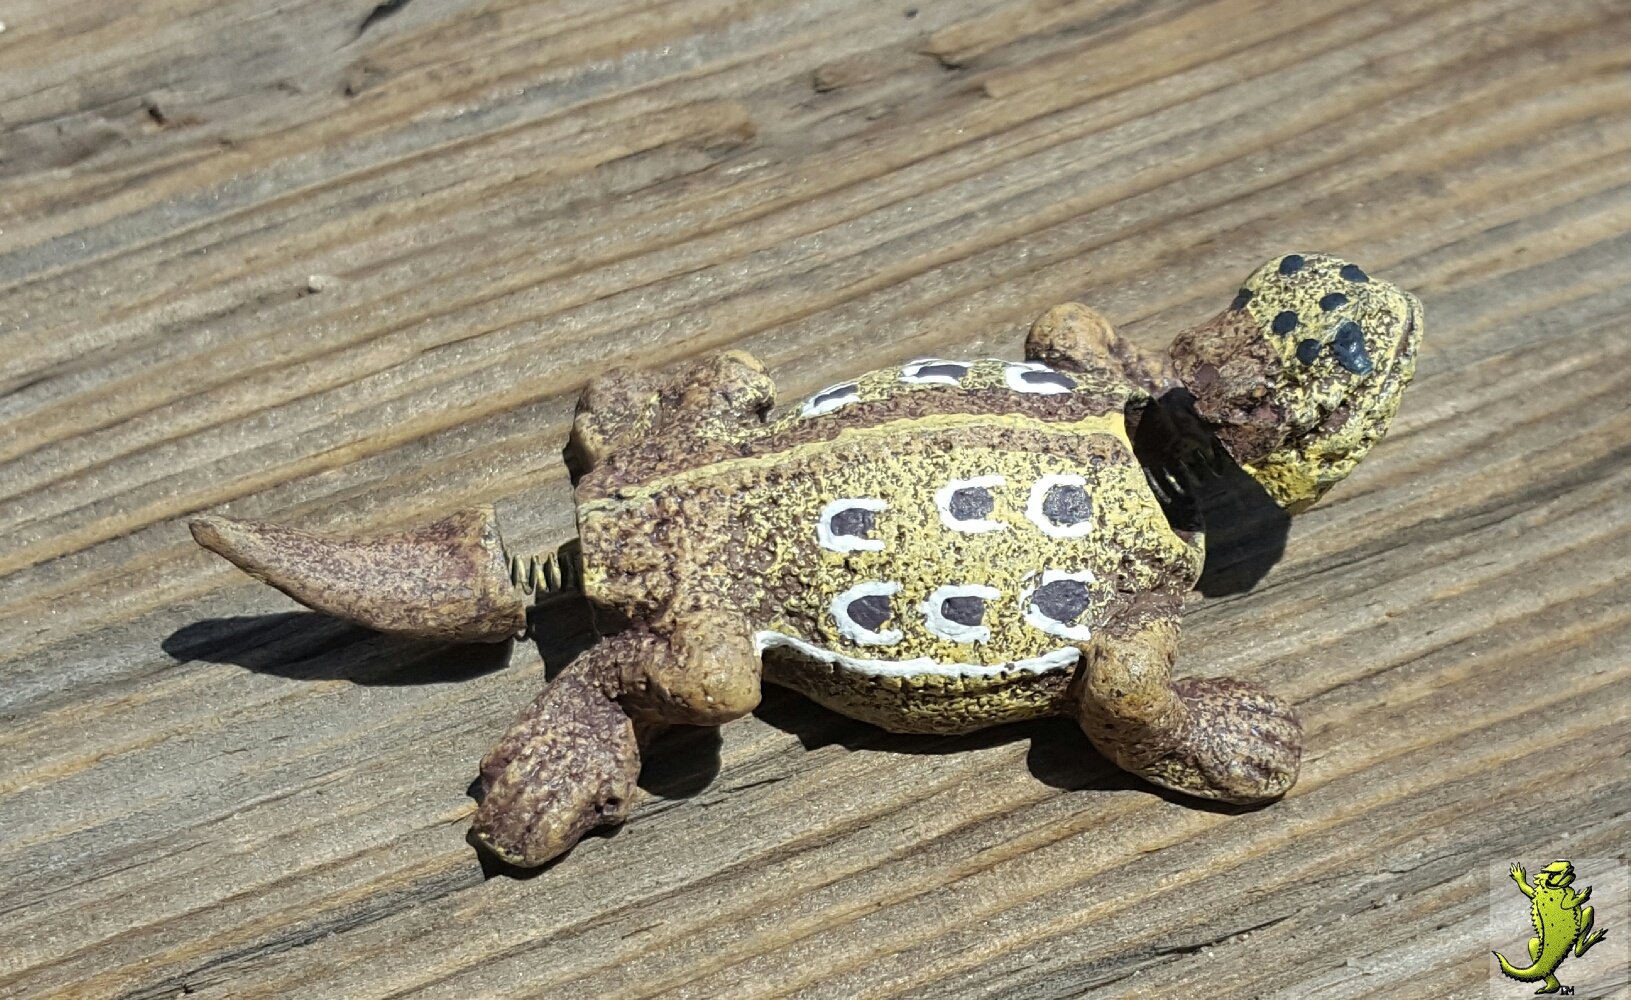 Small Horny Toad Bobble Head - 2.5"